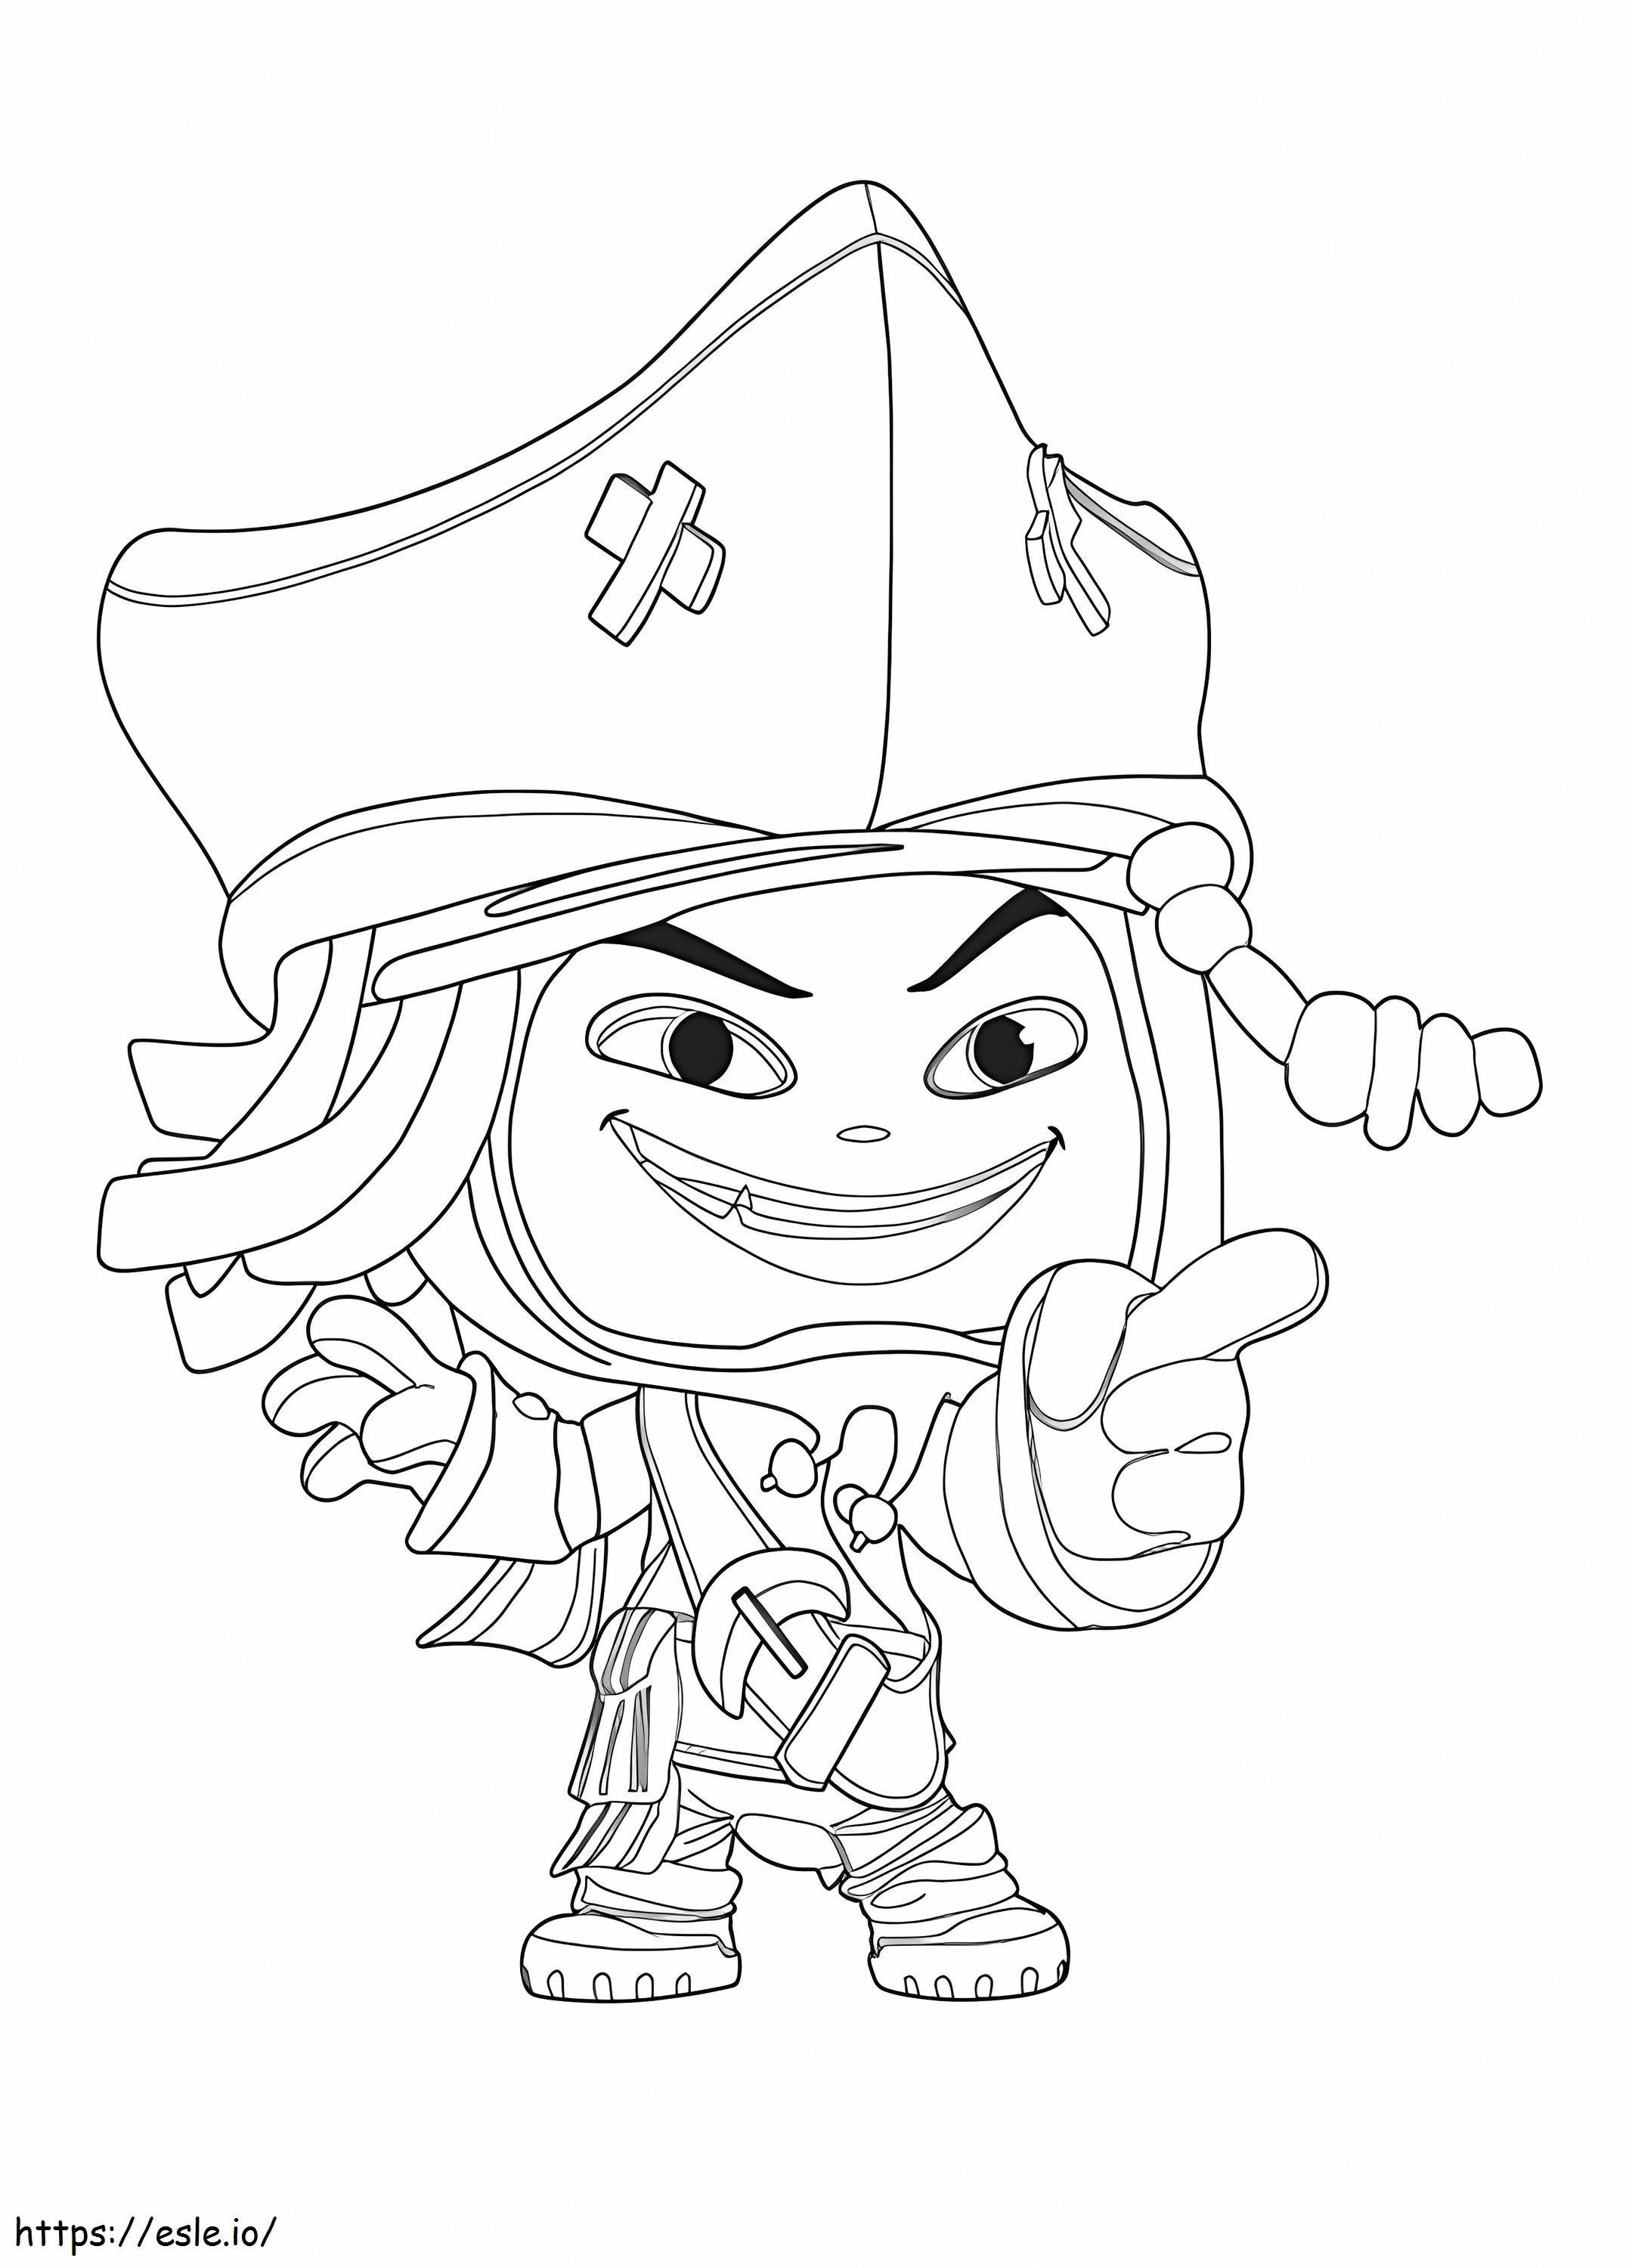 Coloriage Jack Sparrow de l'univers Disney à imprimer dessin